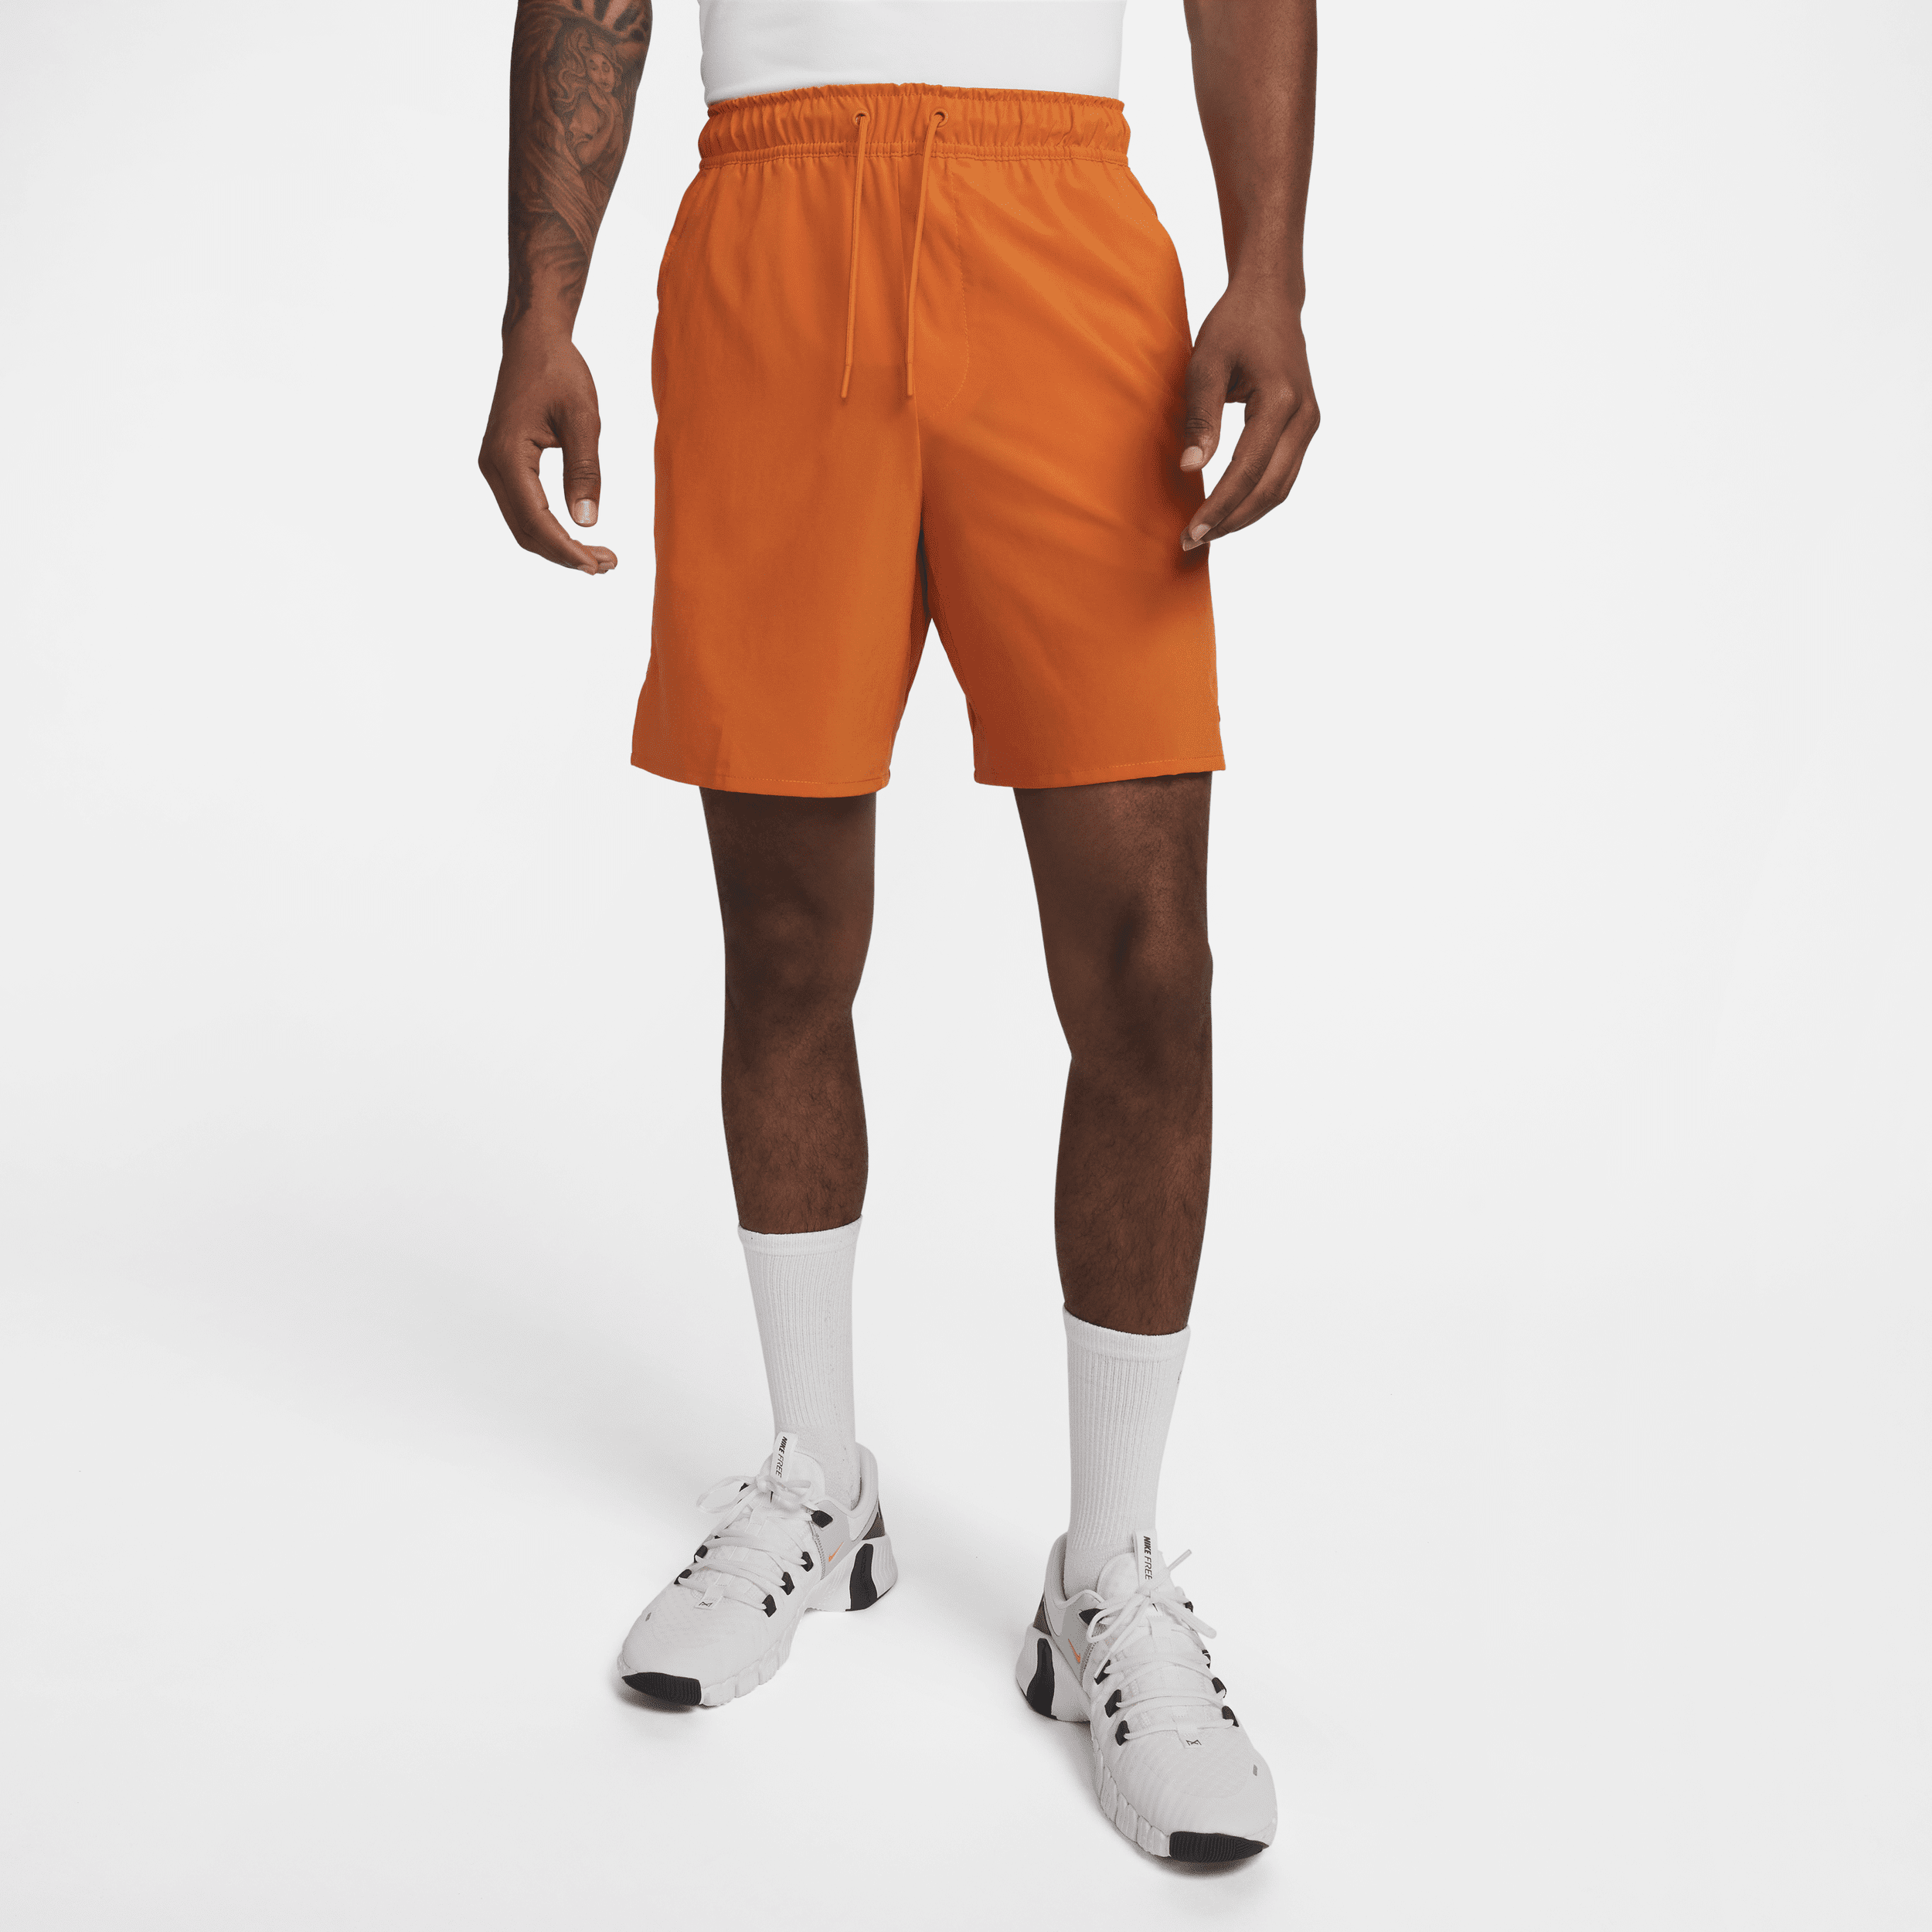 Nike Unlimited multifunctionele niet-gevoerde herenshorts met Dri-FIT (18 cm) - Oranje